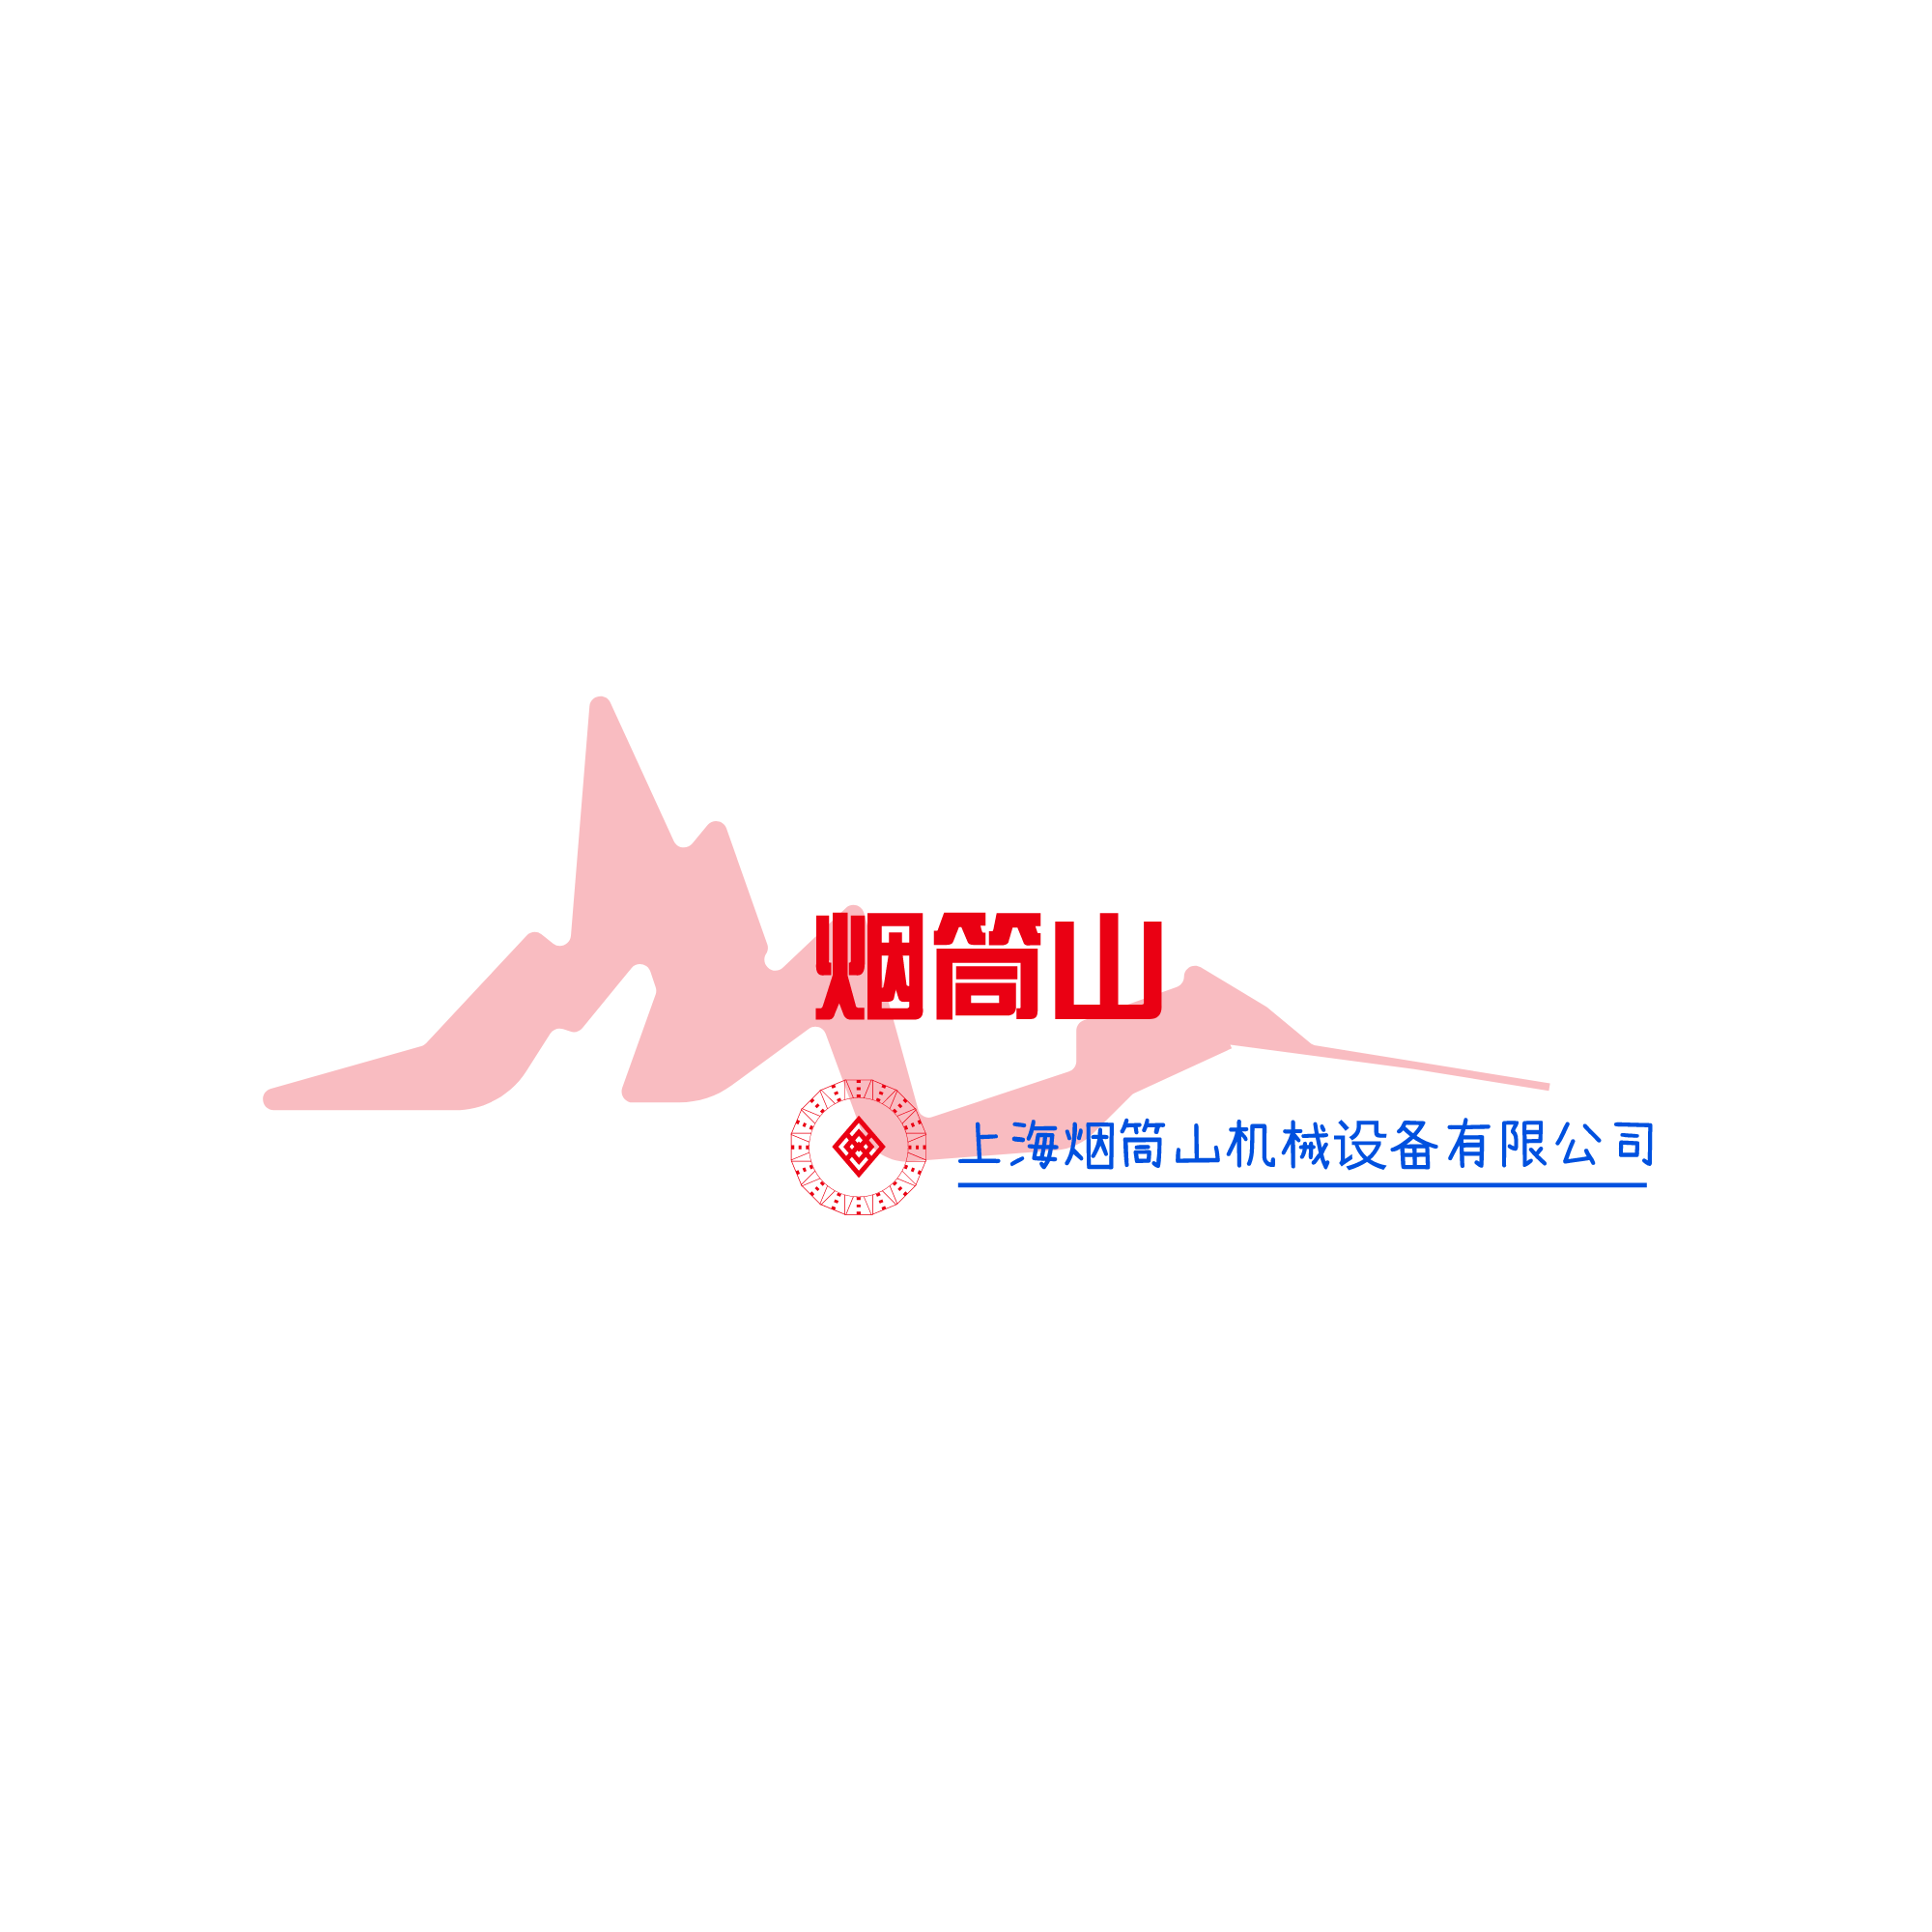 上海烟筒山机械设备有限公司